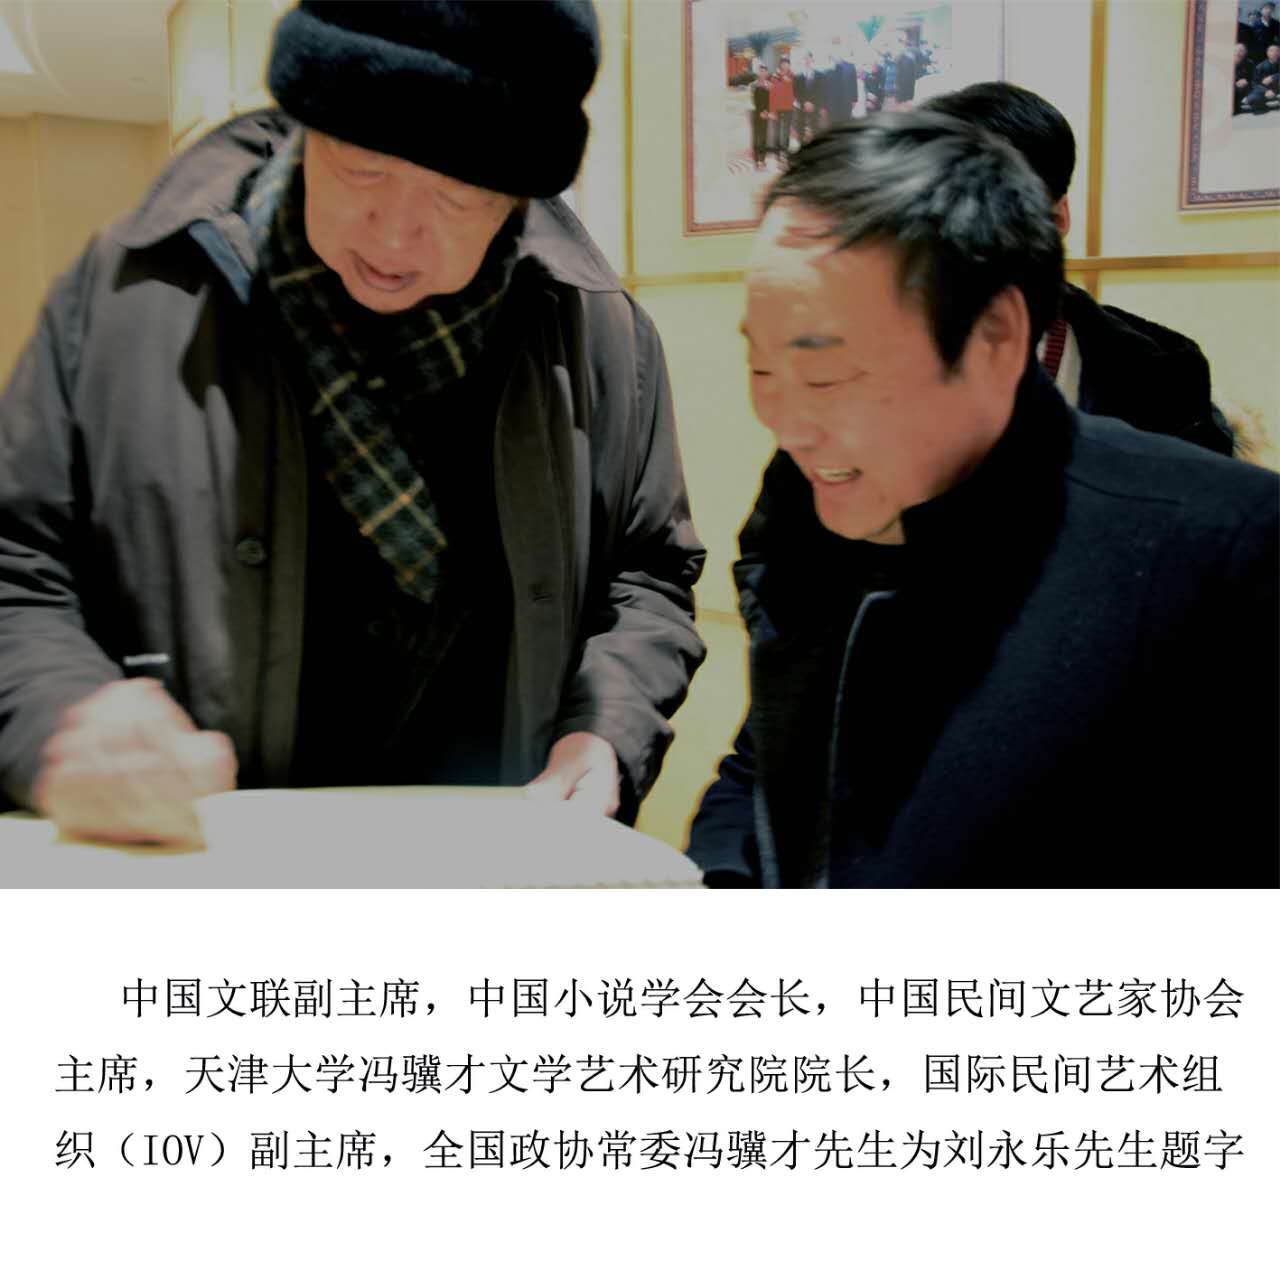 全国政协常委冯骥才先生为刘永乐先生题字